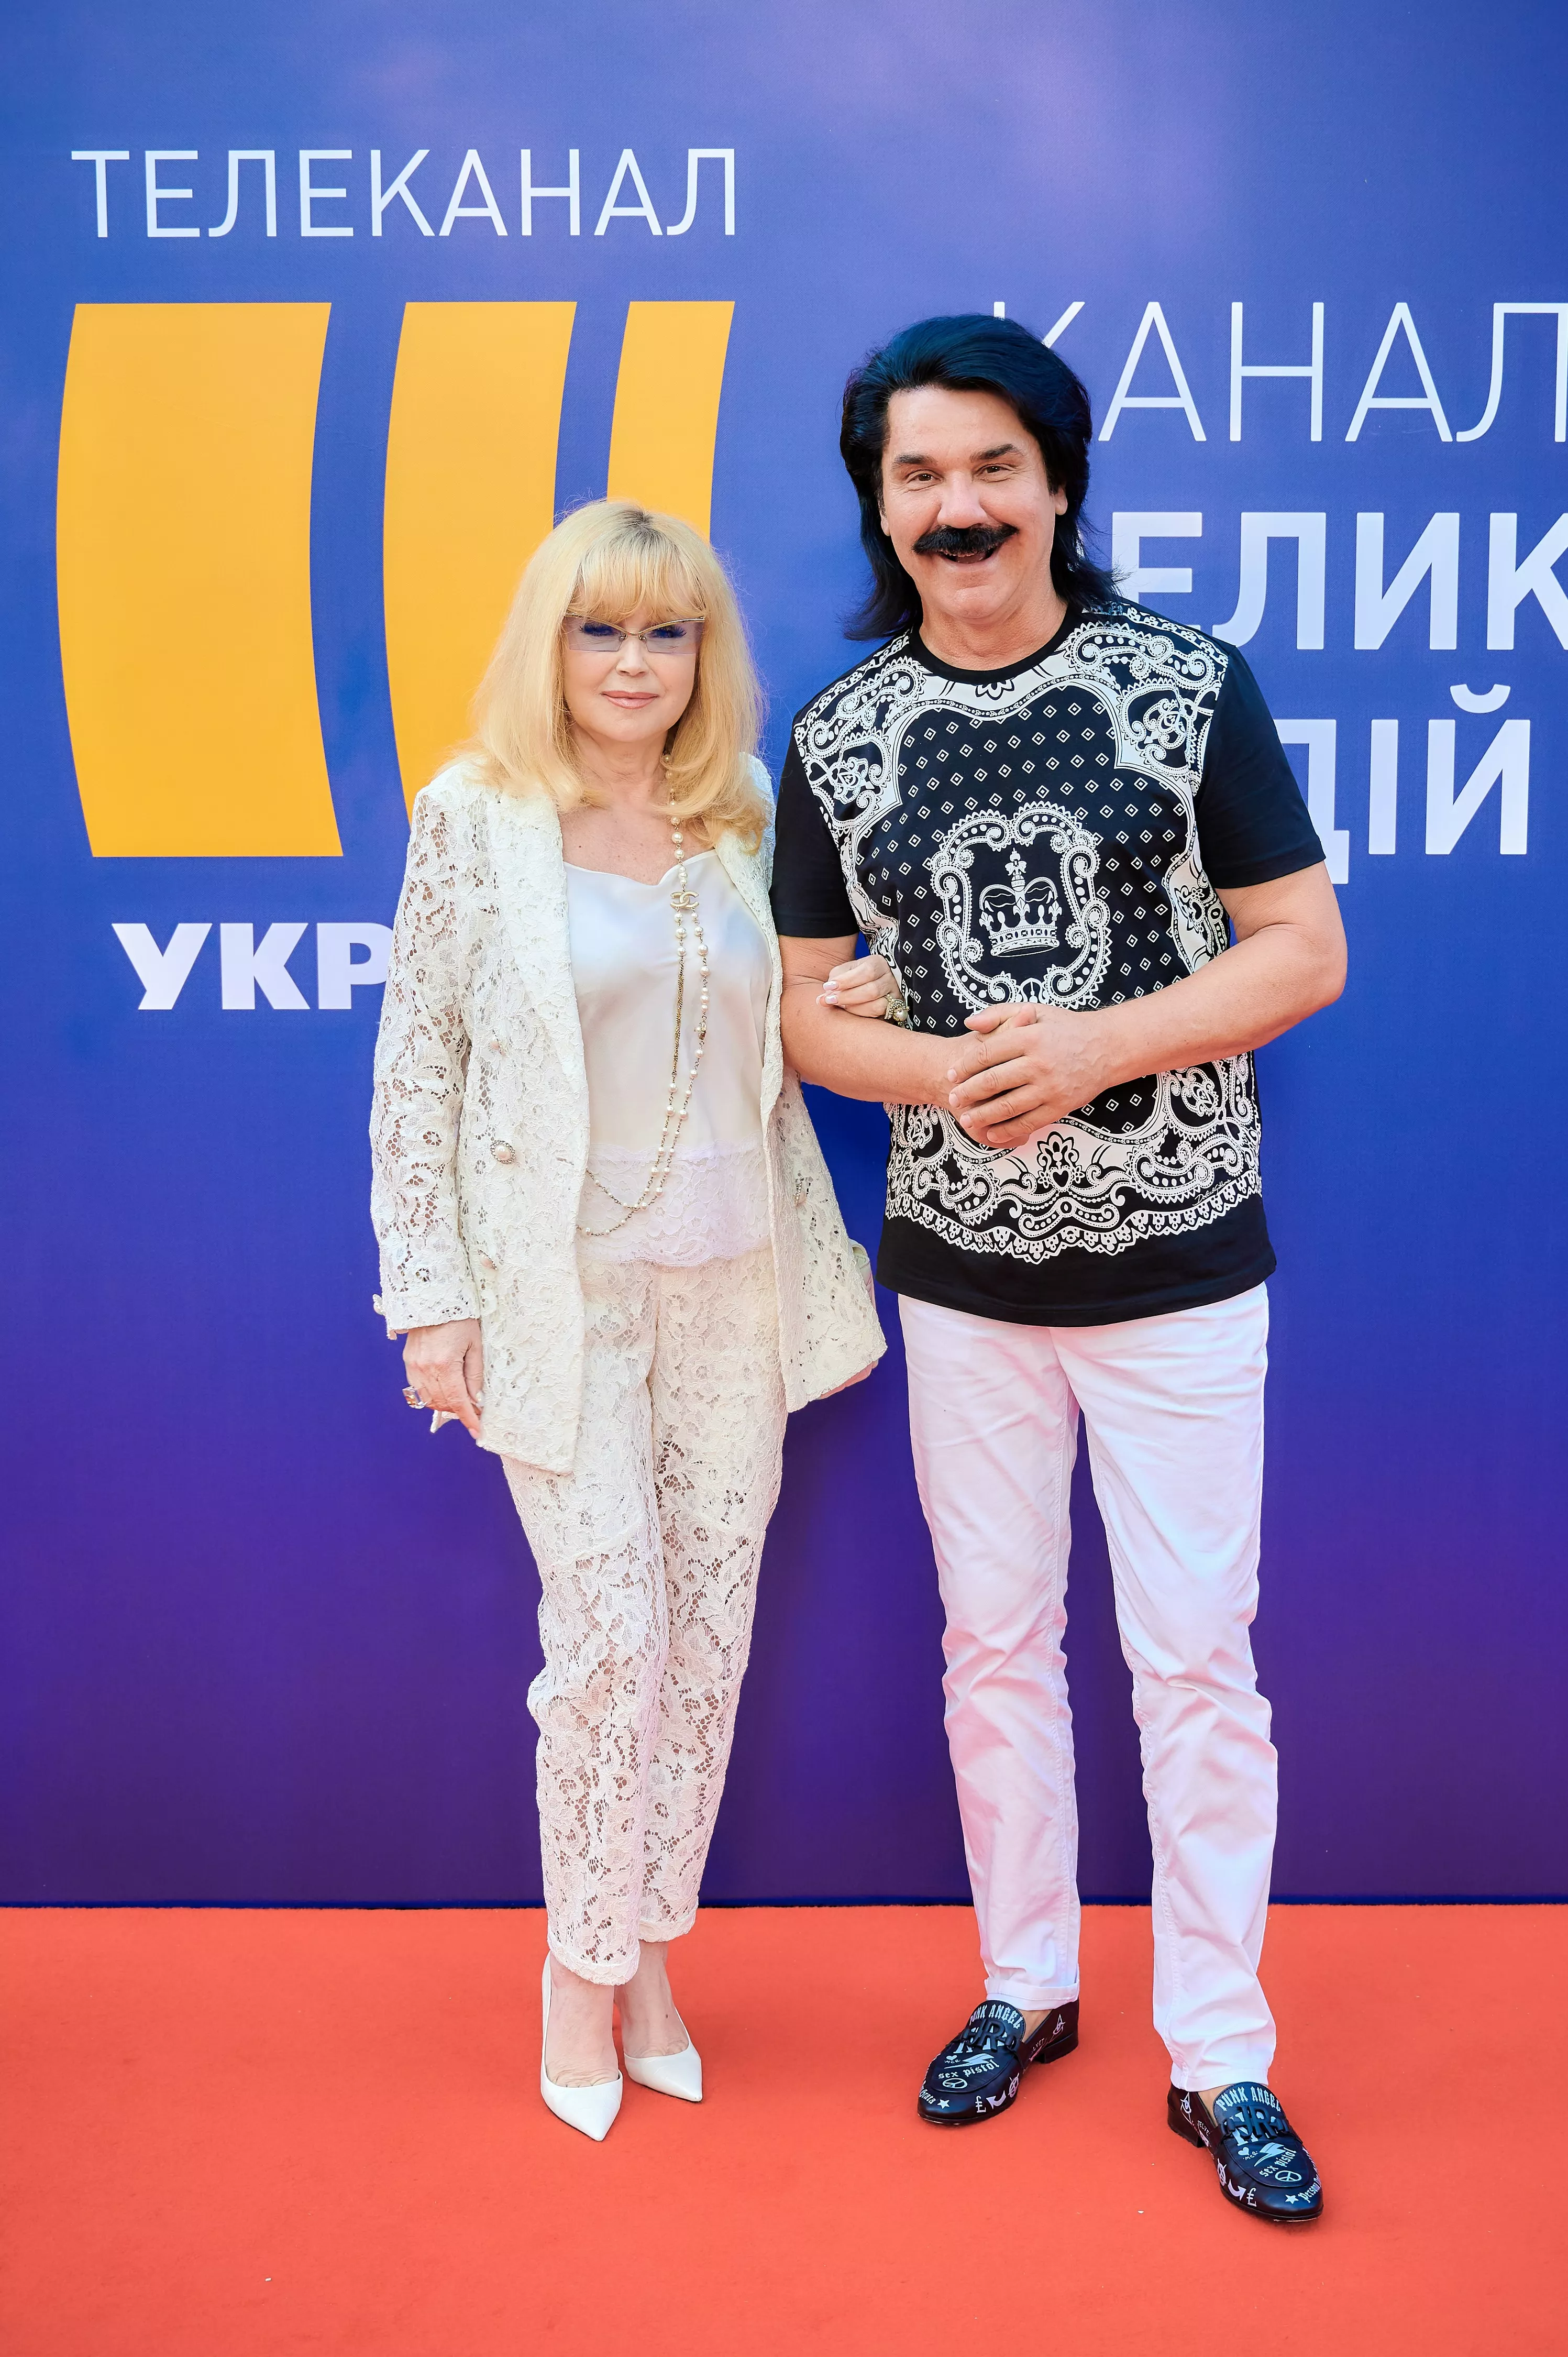 Павло Зибров с супругой